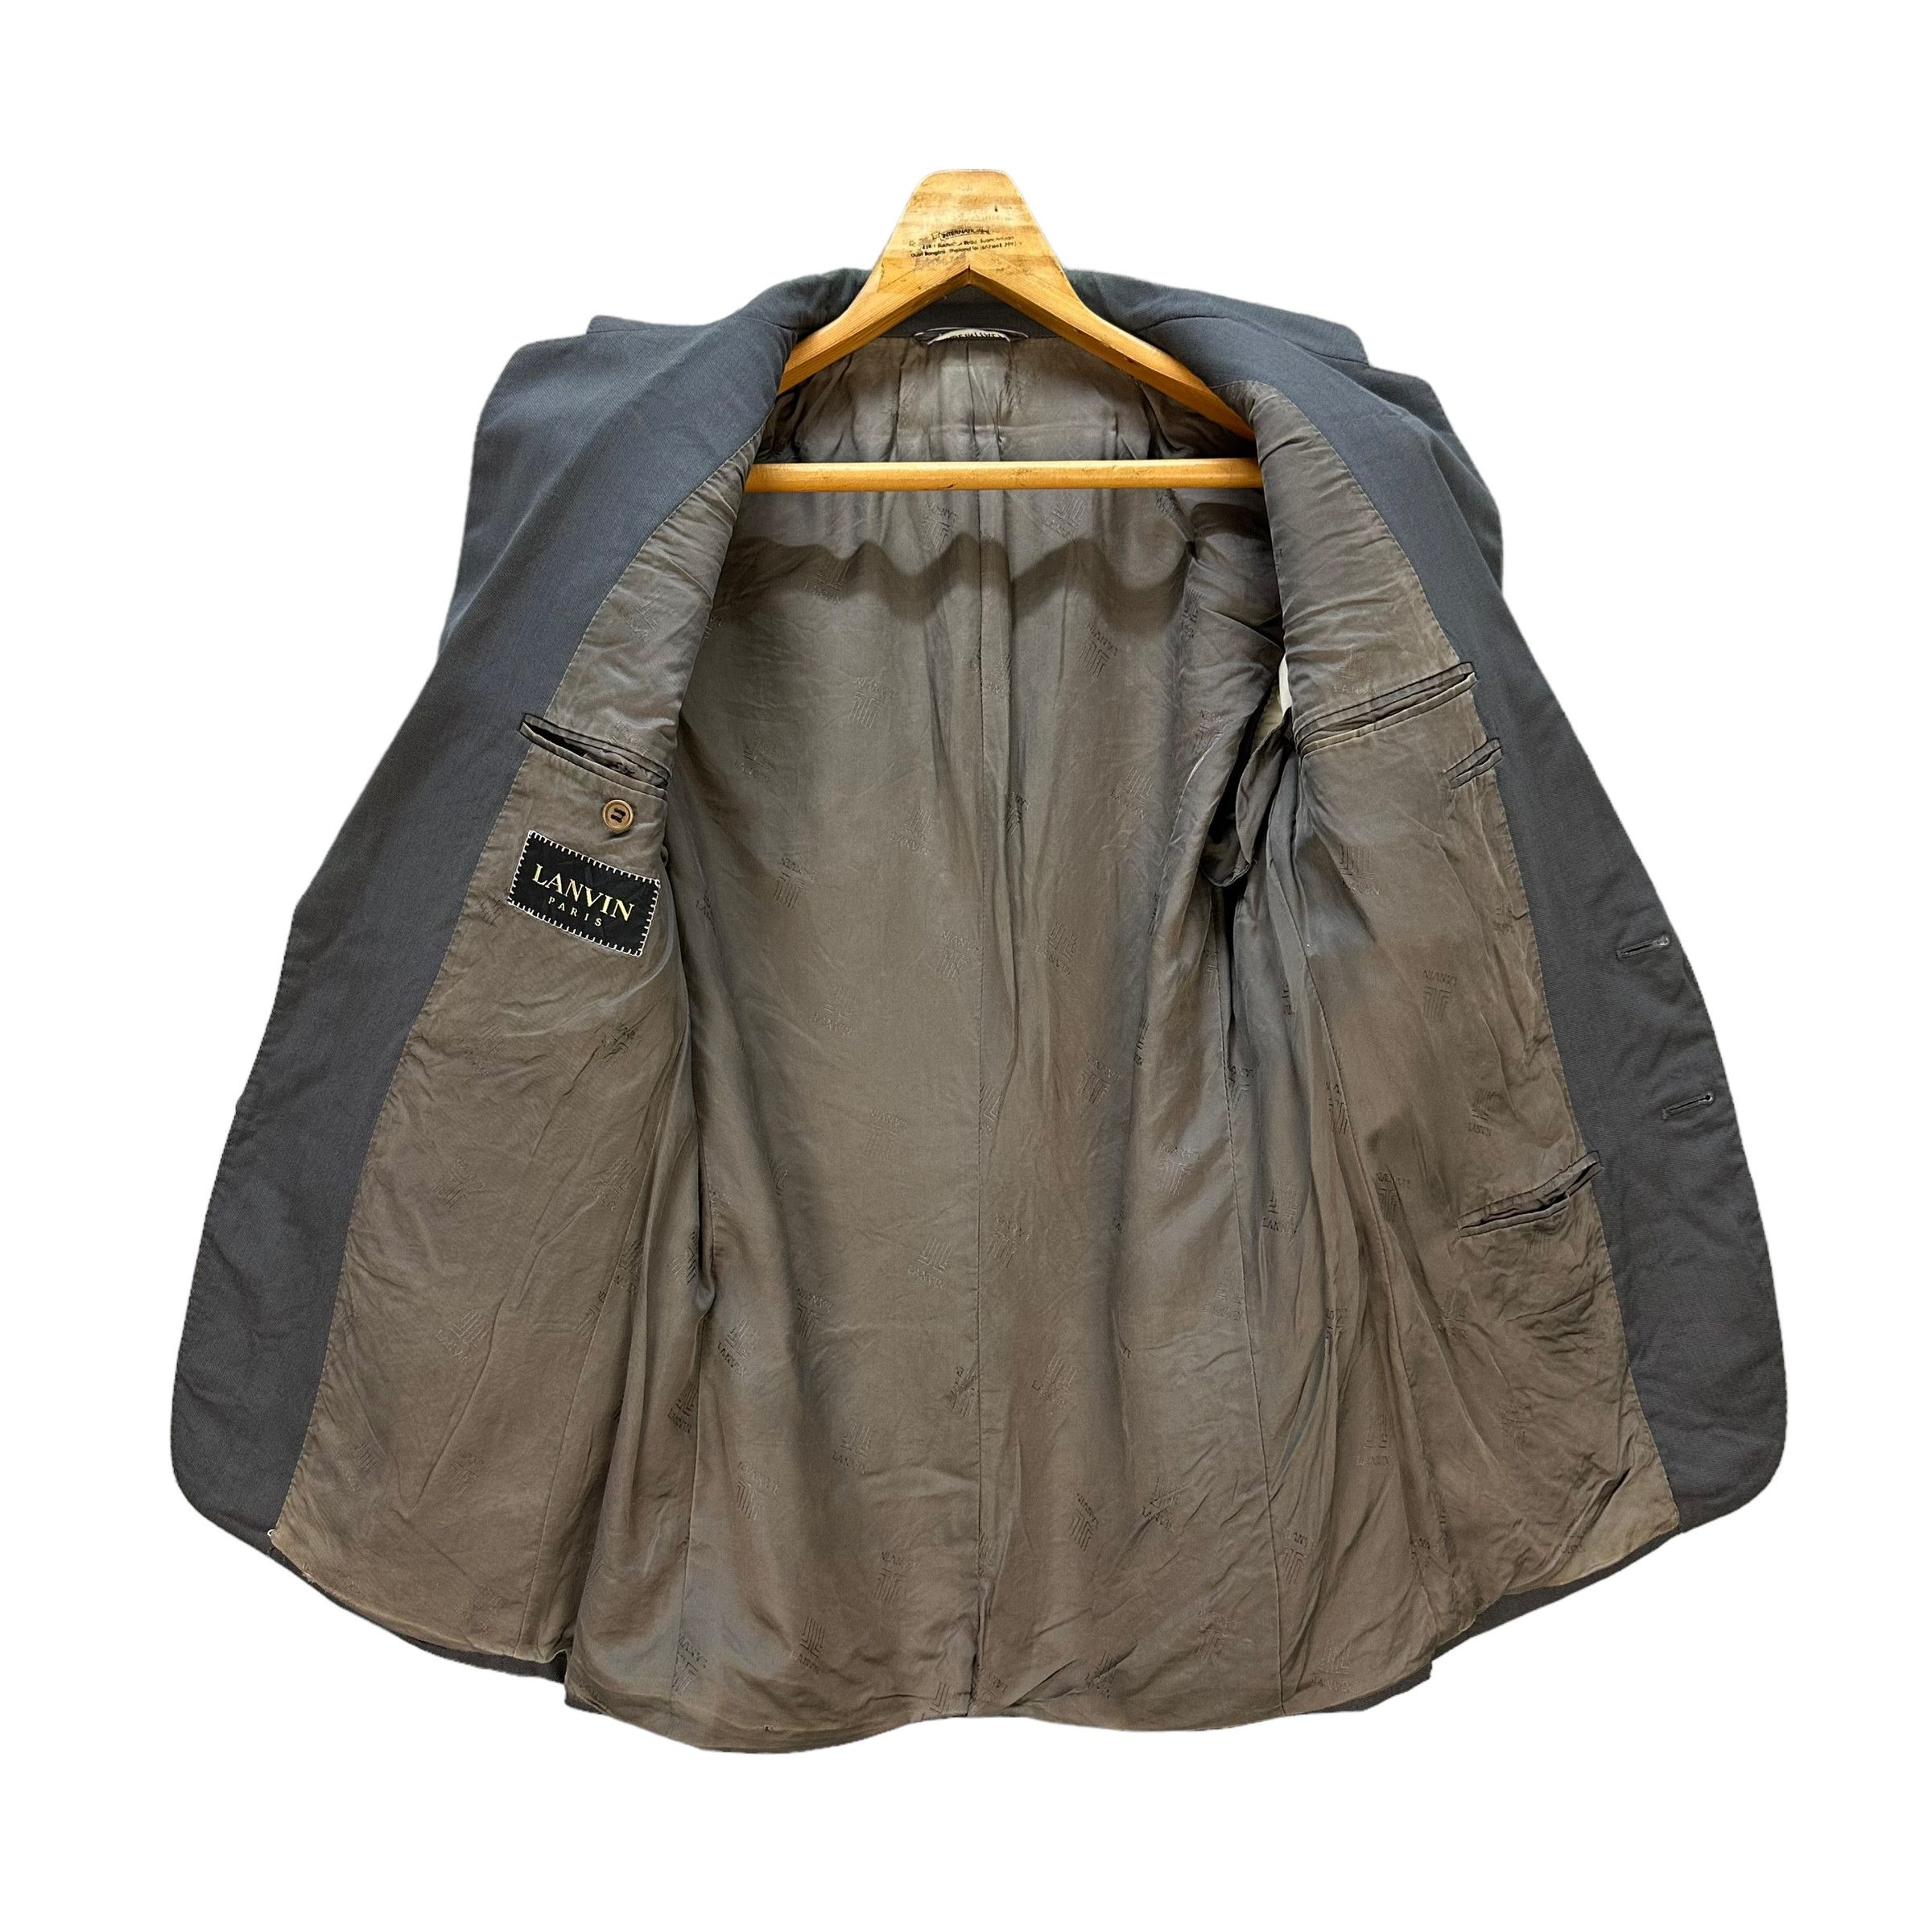 Lanvin Paris Suit Jacket / Blazer #9139-61 - 6